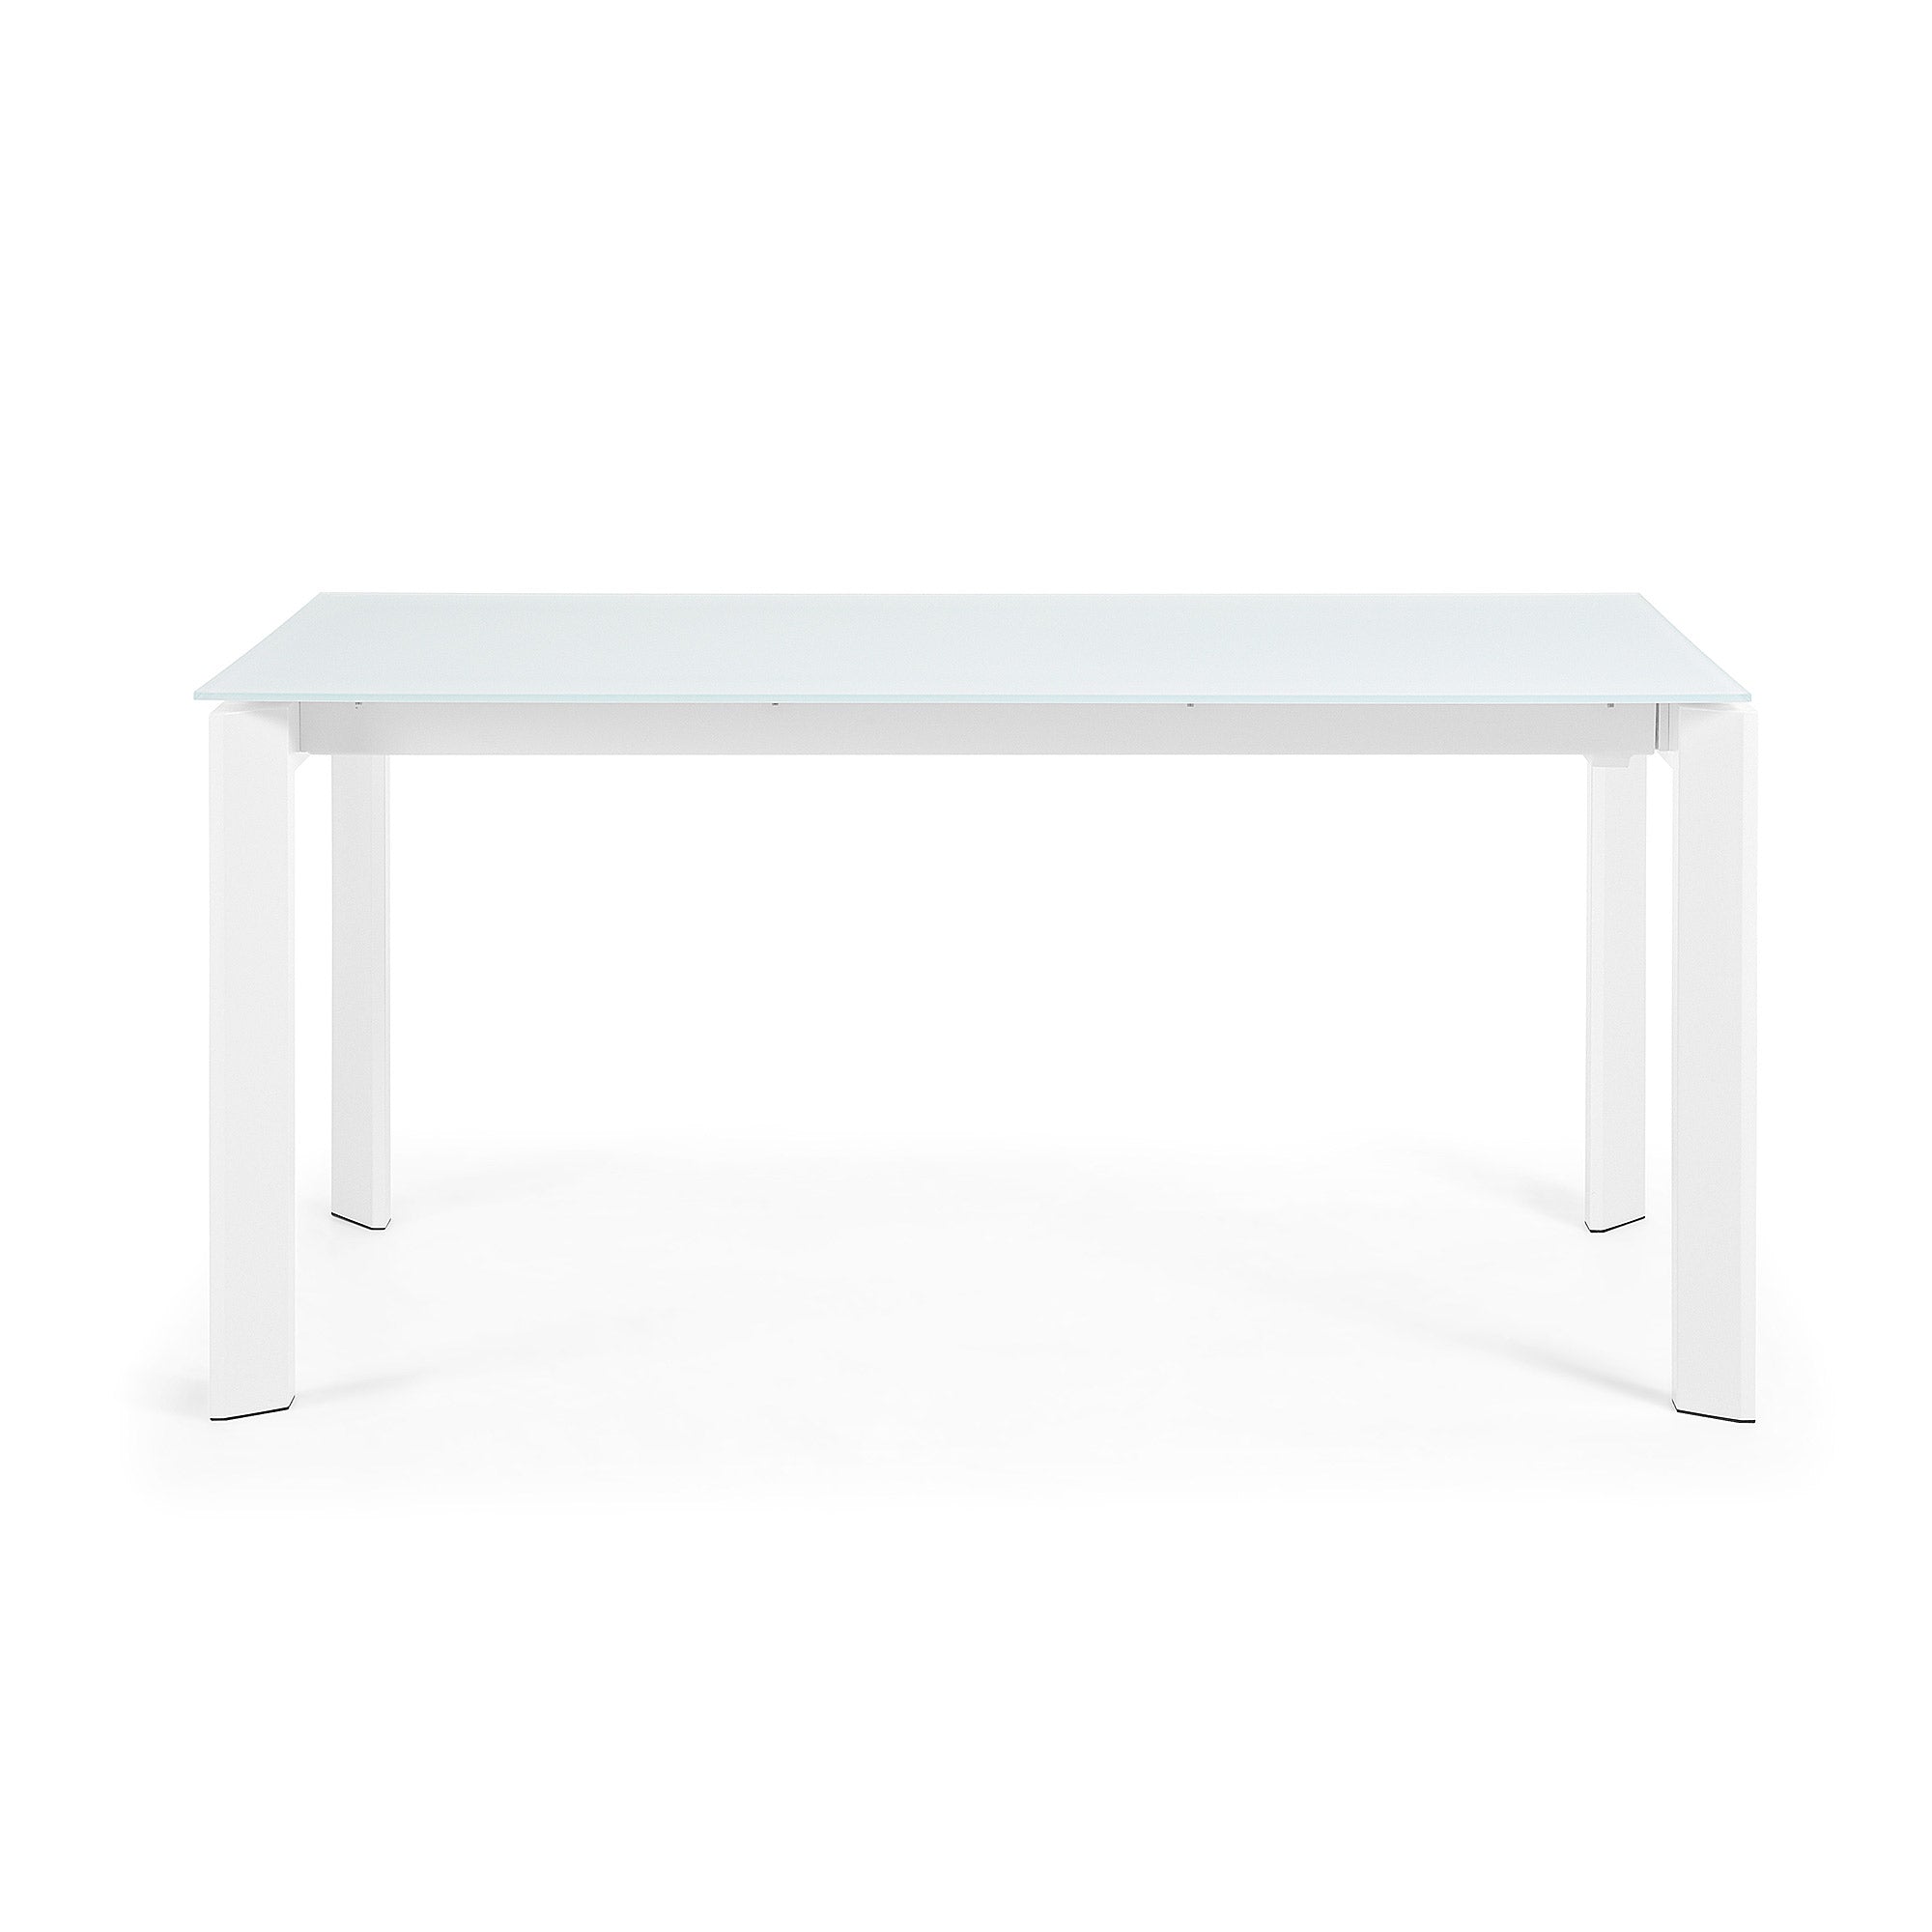 Axis fehér üvegből készült kihúzható asztal fehér acél lábakkal 160 (220) cm